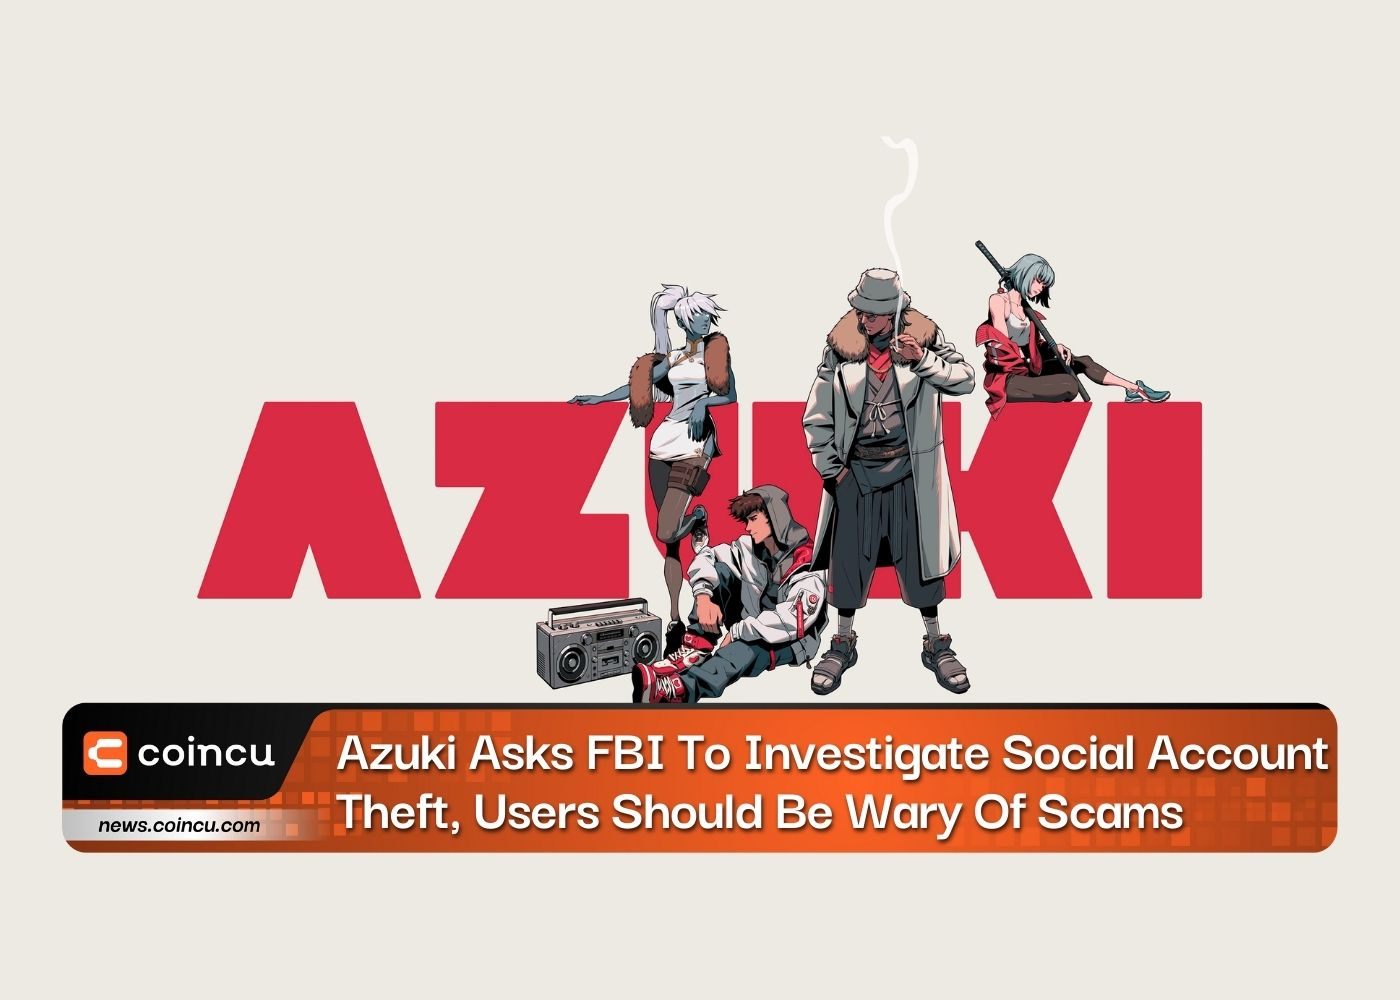 Azuki demande au FBI d'enquêter sur le vol de comptes sociaux, les utilisateurs doivent se méfier des escroqueries